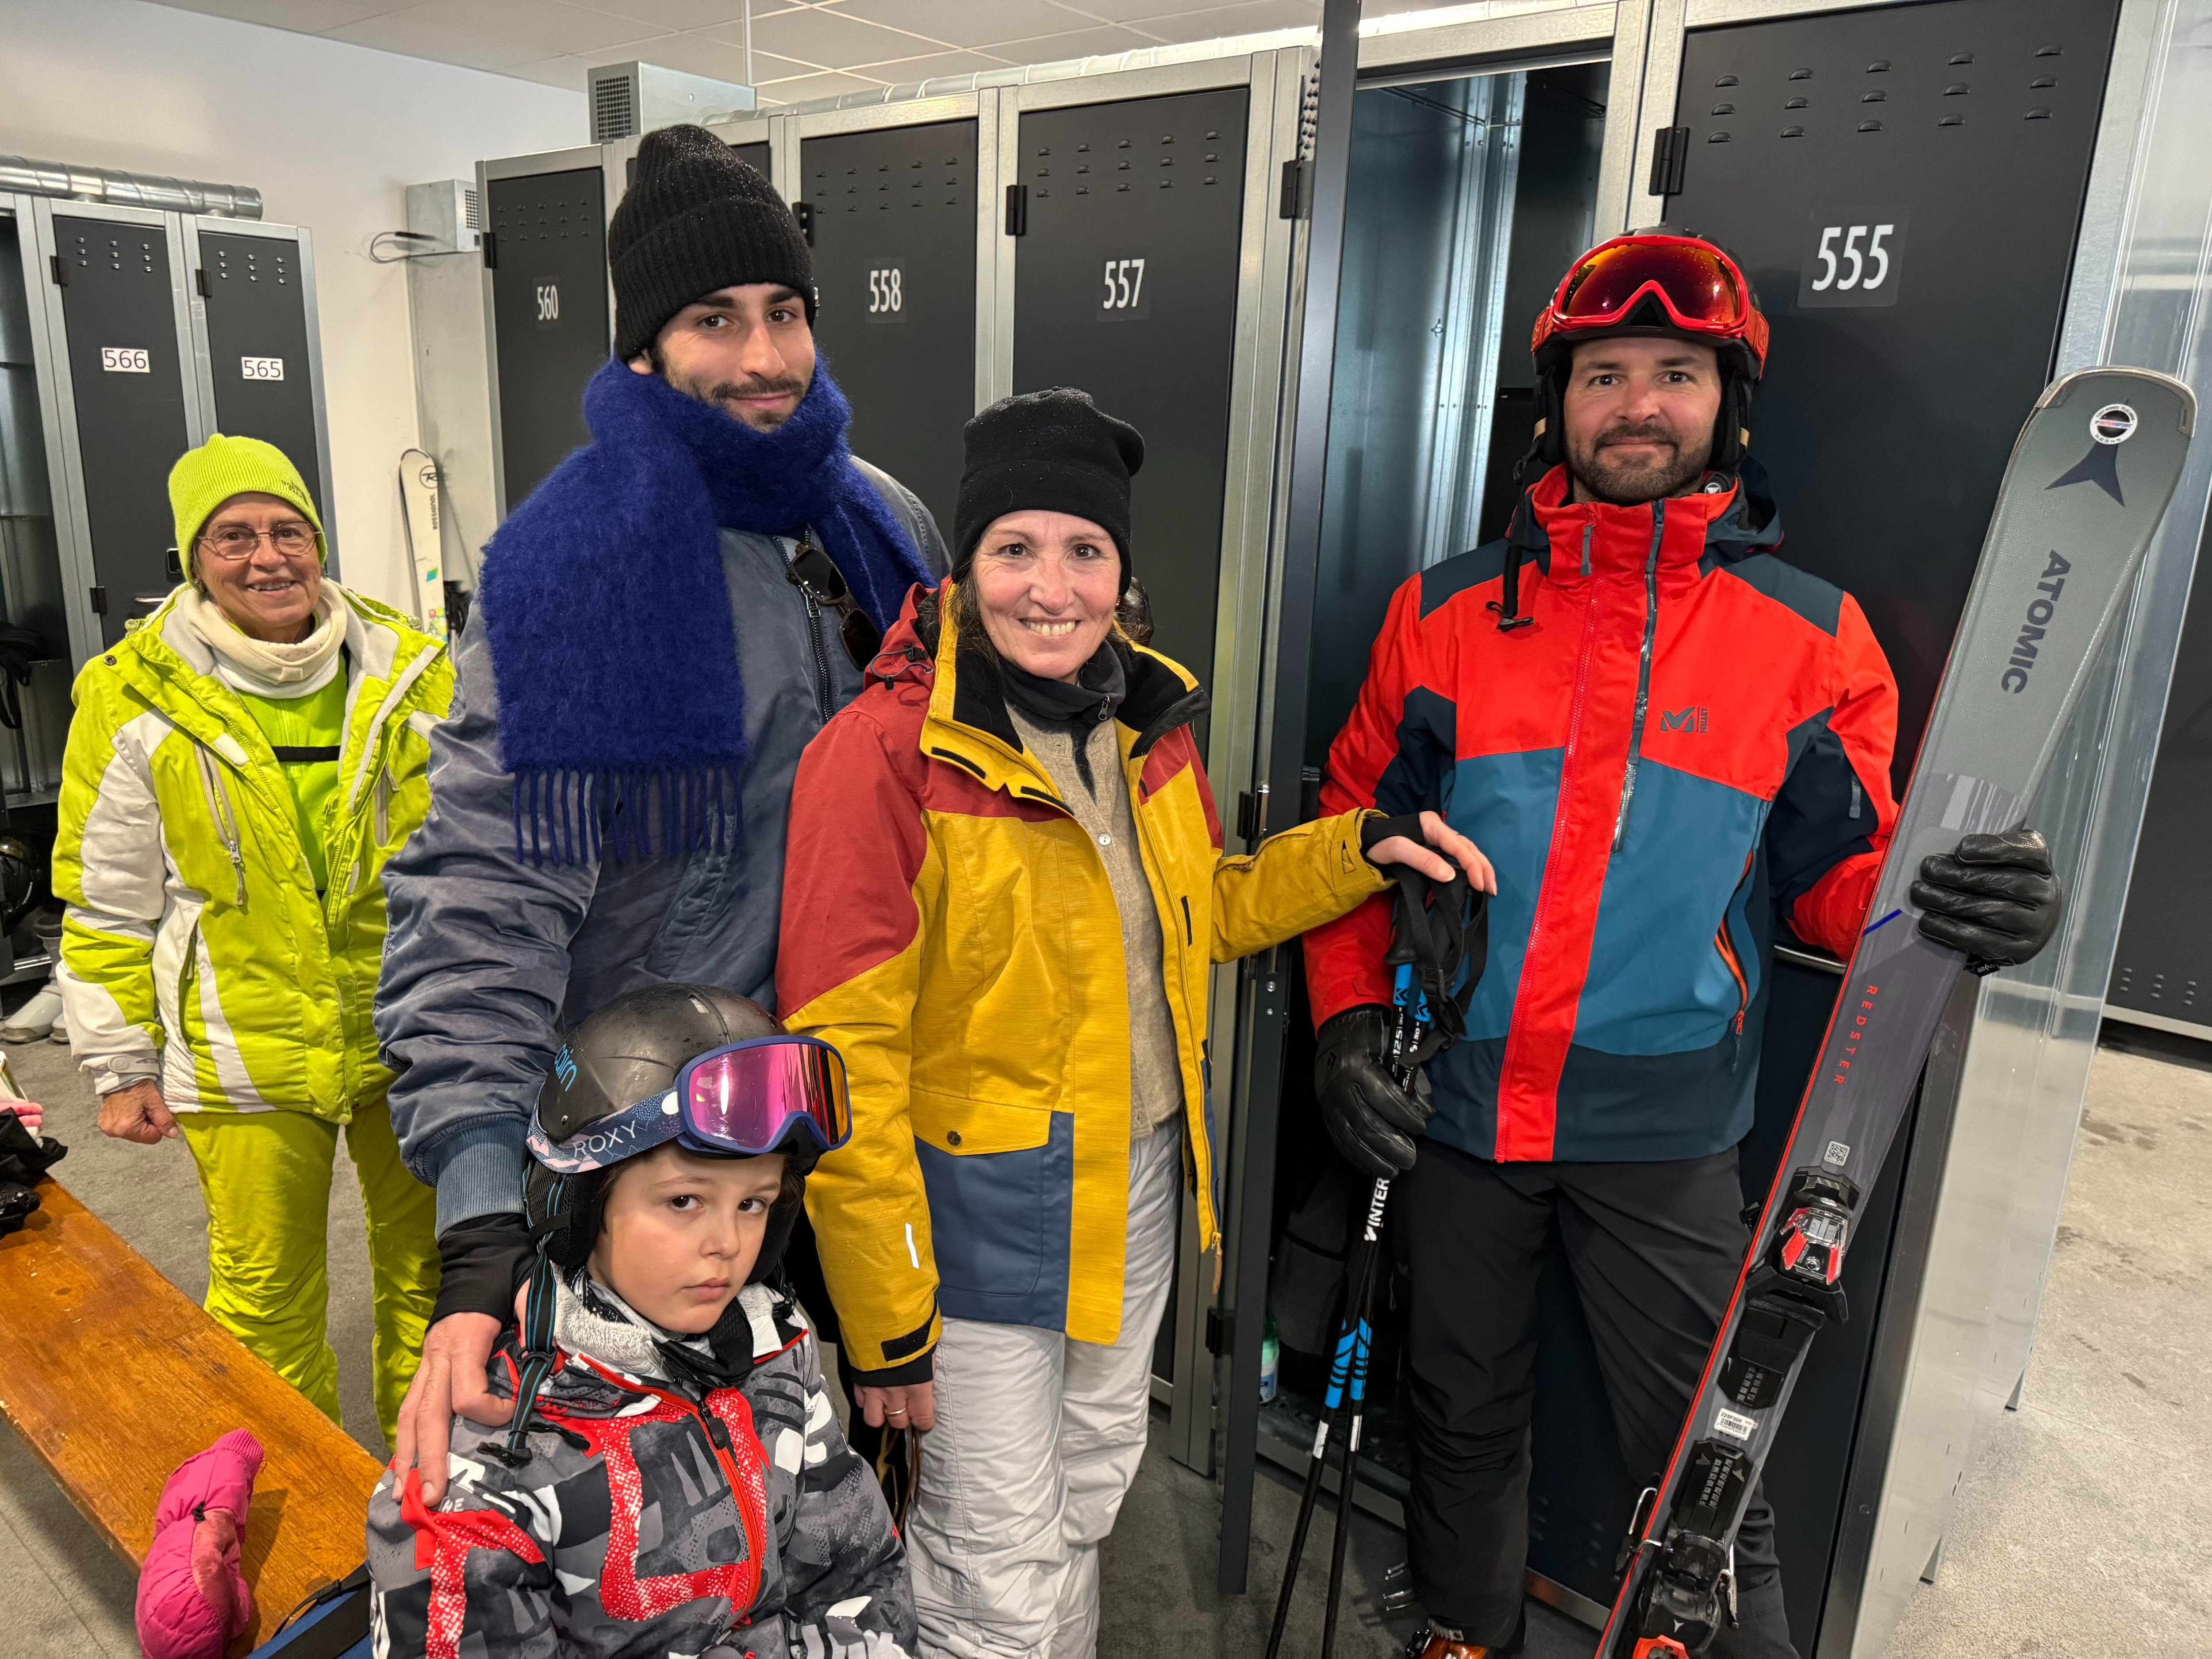 Font-Romeu. Cette famille de Basques ne peut plus se passer de ces casiers à ski pendant ses vacances d'hiver. LP/Christian Goutorbe